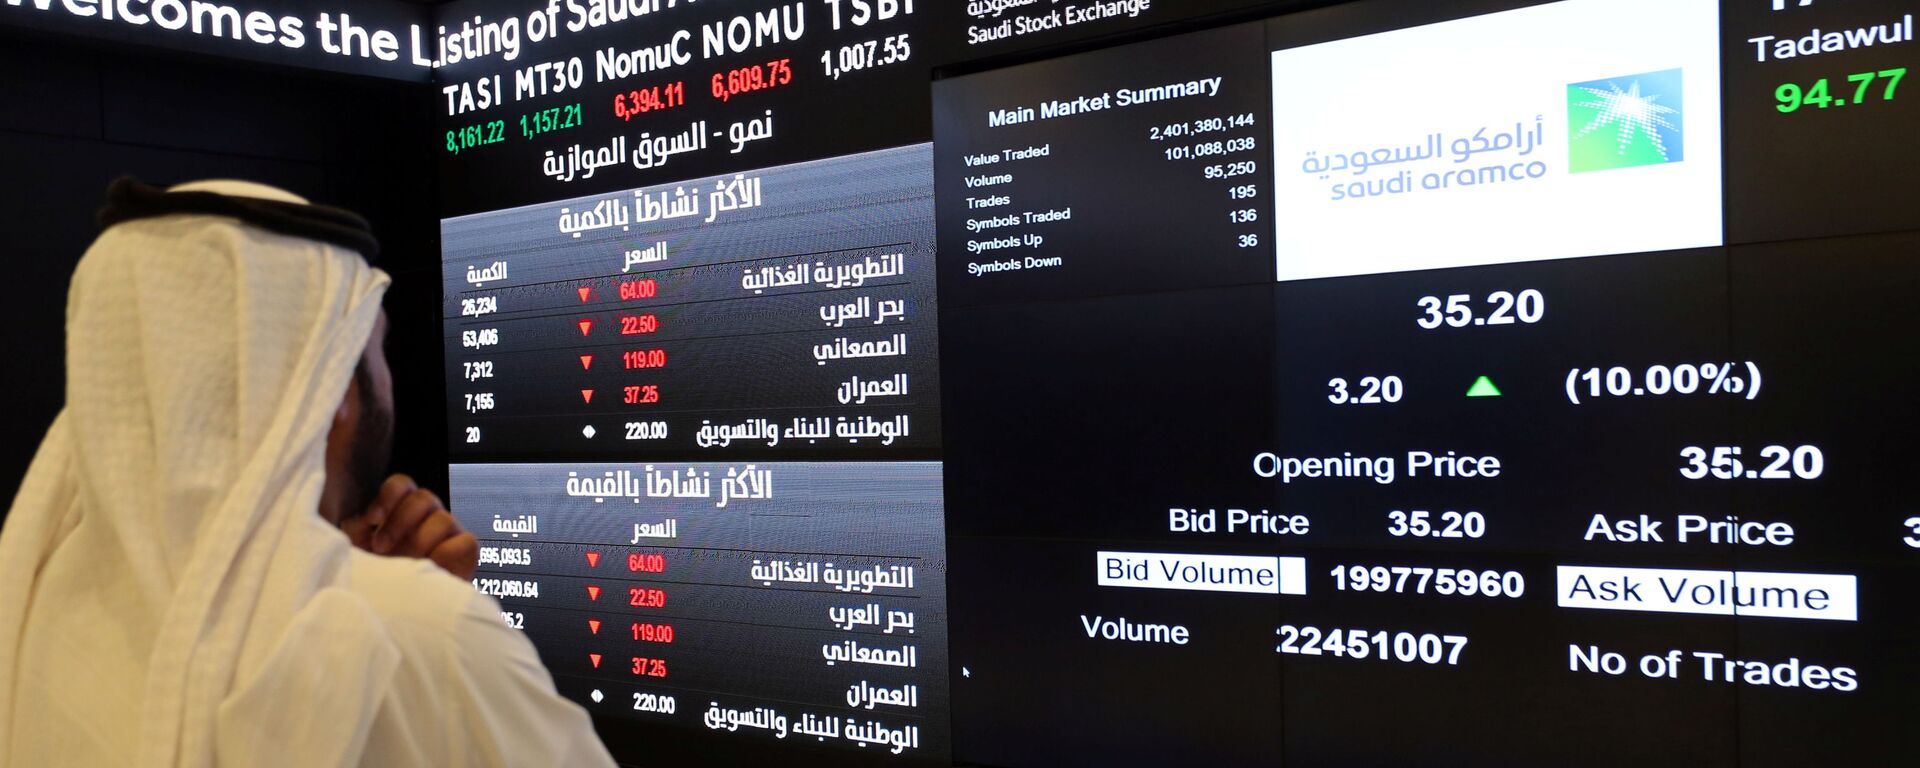 شاشة تعرض معلومات الأسهم في السوق المالية السعودية (تداول)، في الرياض، السعودية 11 ديسمبر 2019 - سبوتنيك عربي, 1920, 19.10.2021